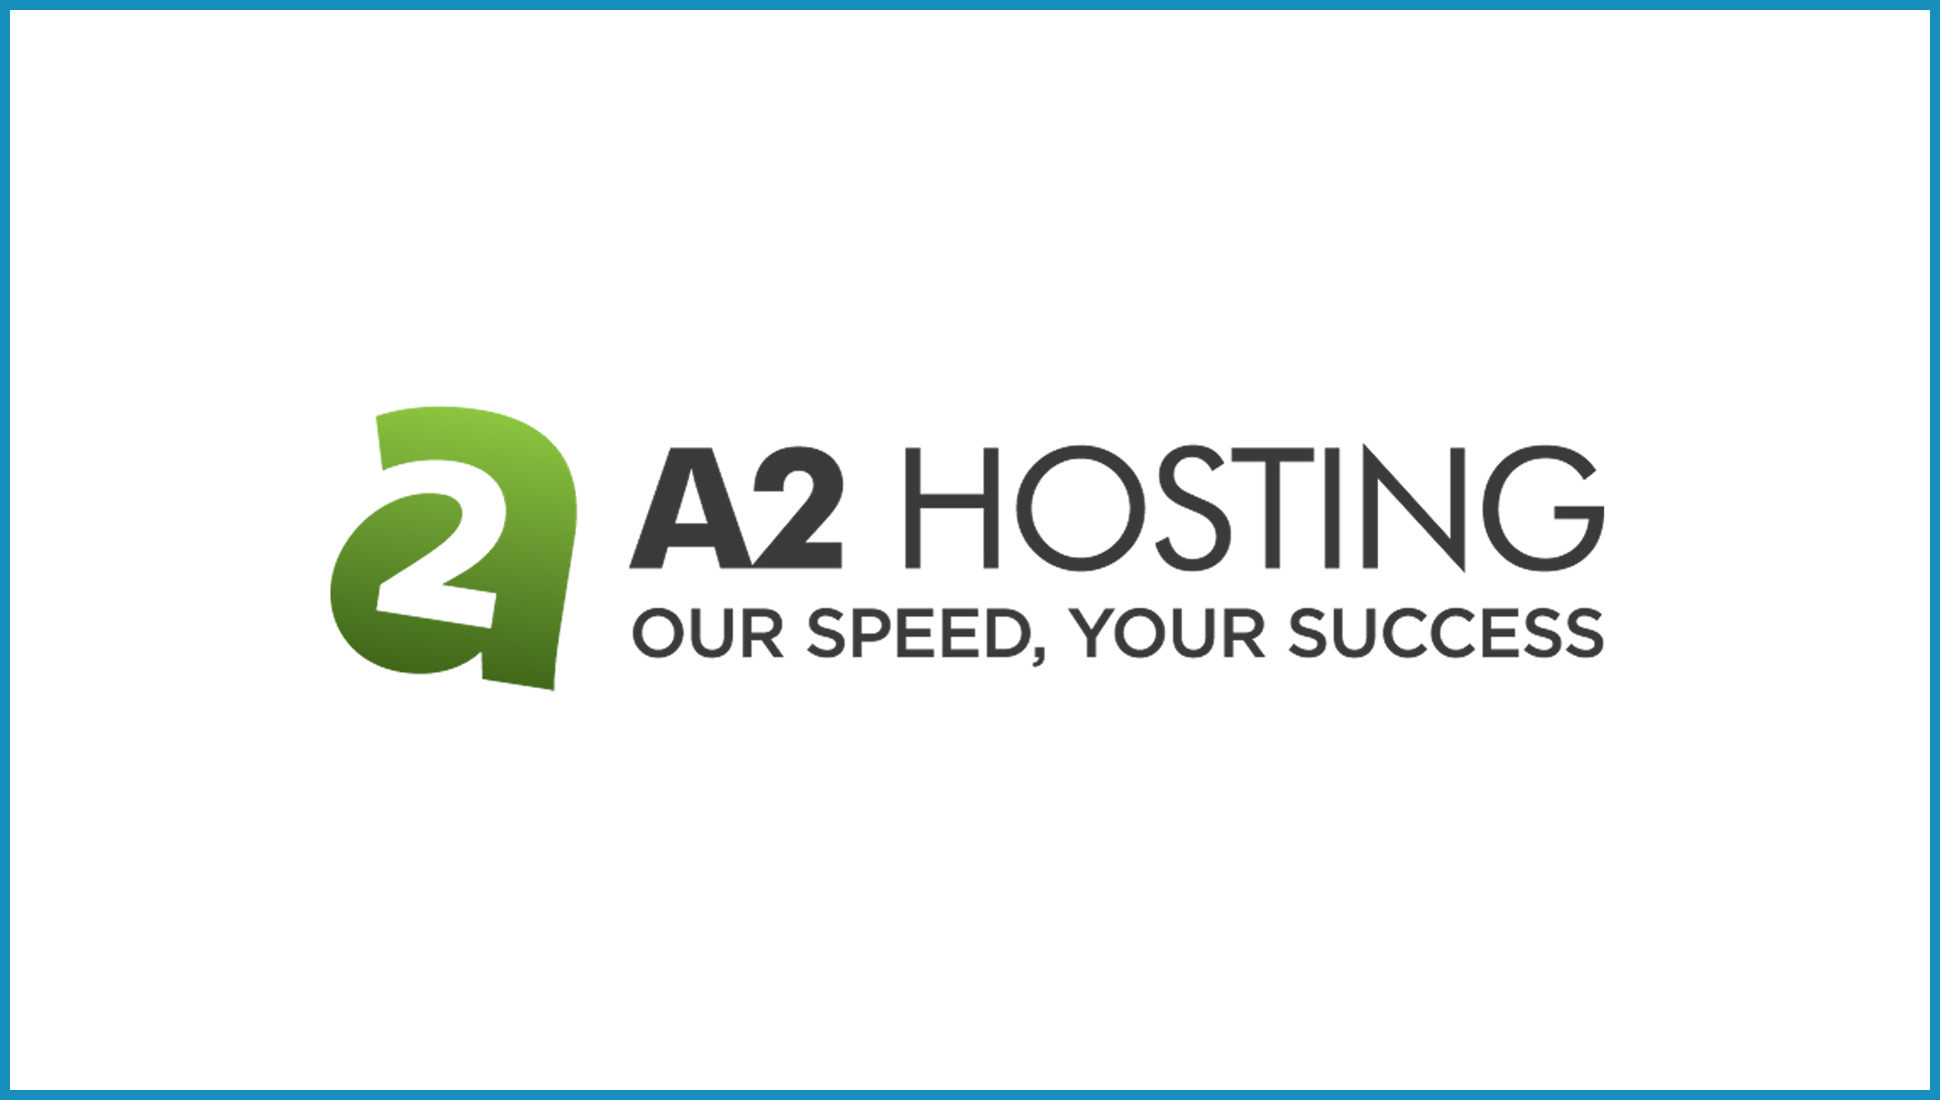 Logo A2 Hosting